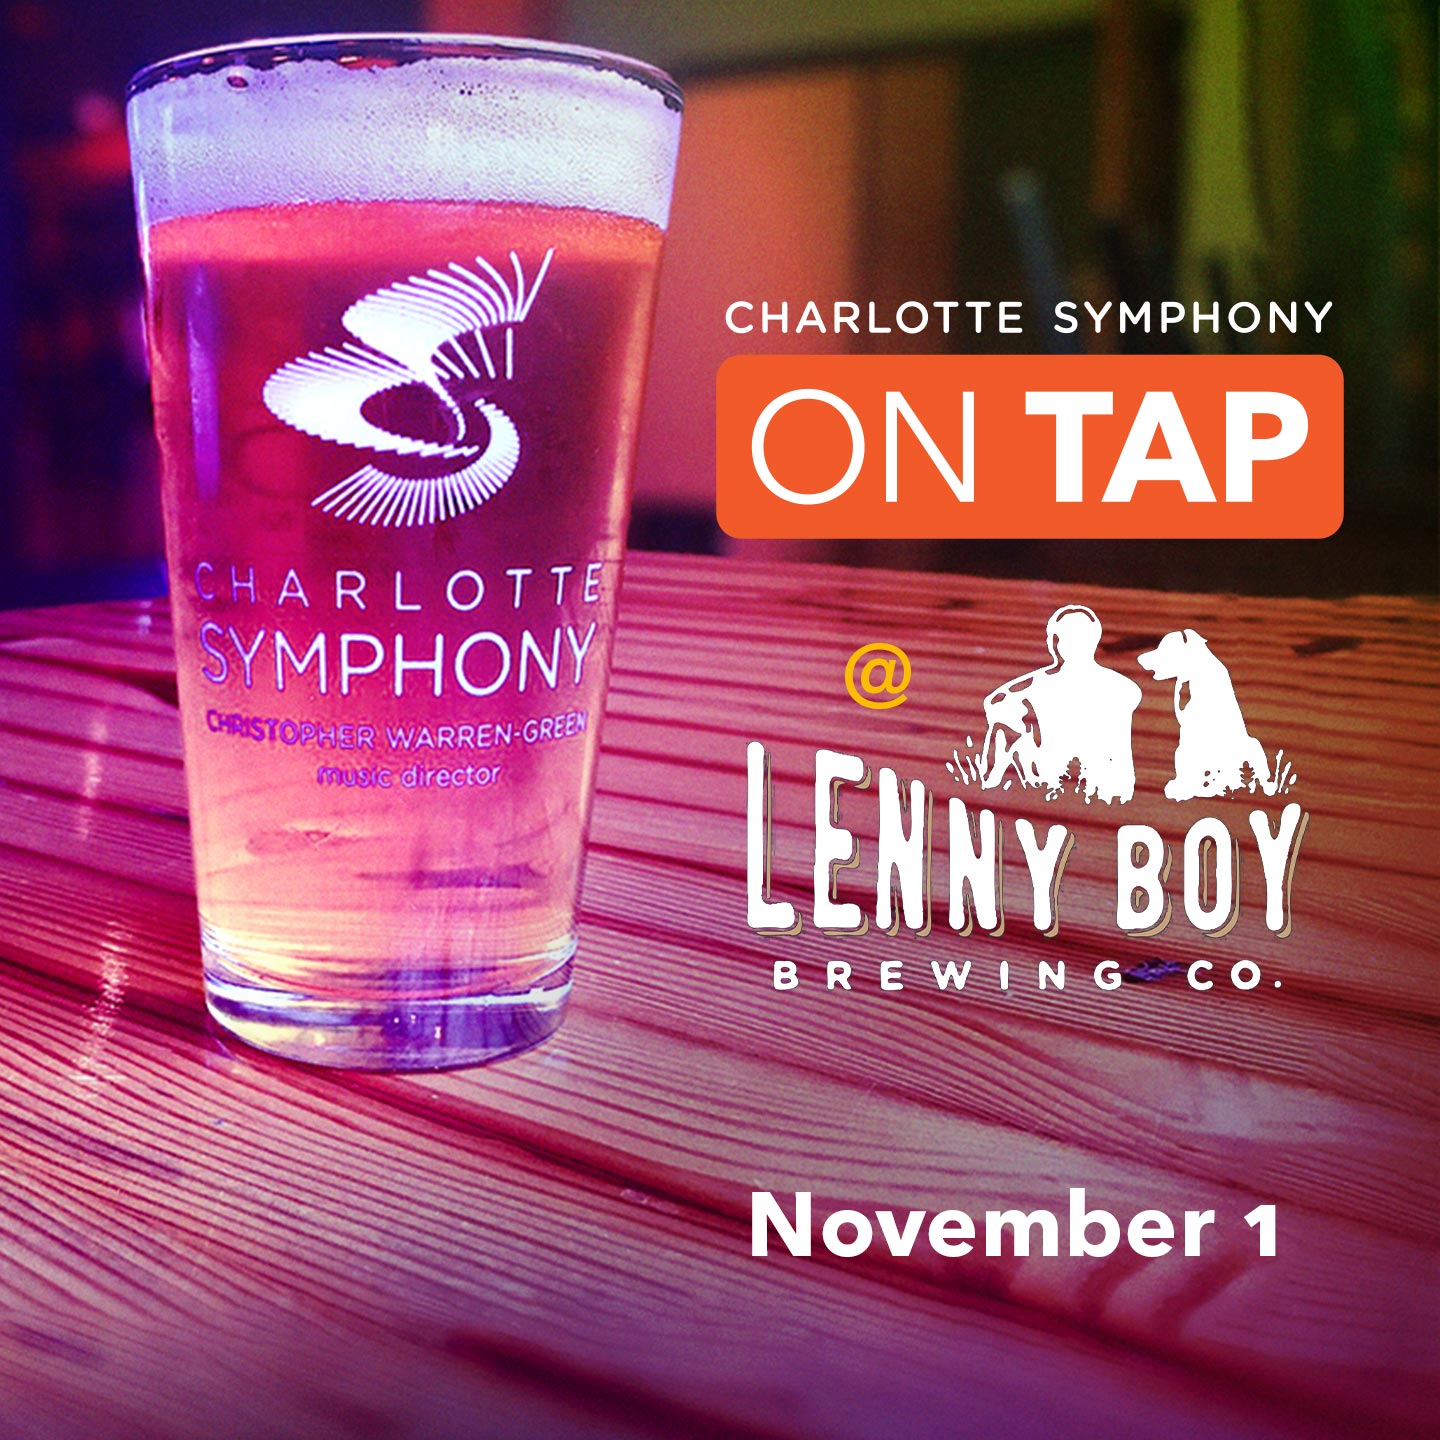 Charlotte Symphony: On Tap at Lenny Boy Brewing Co.